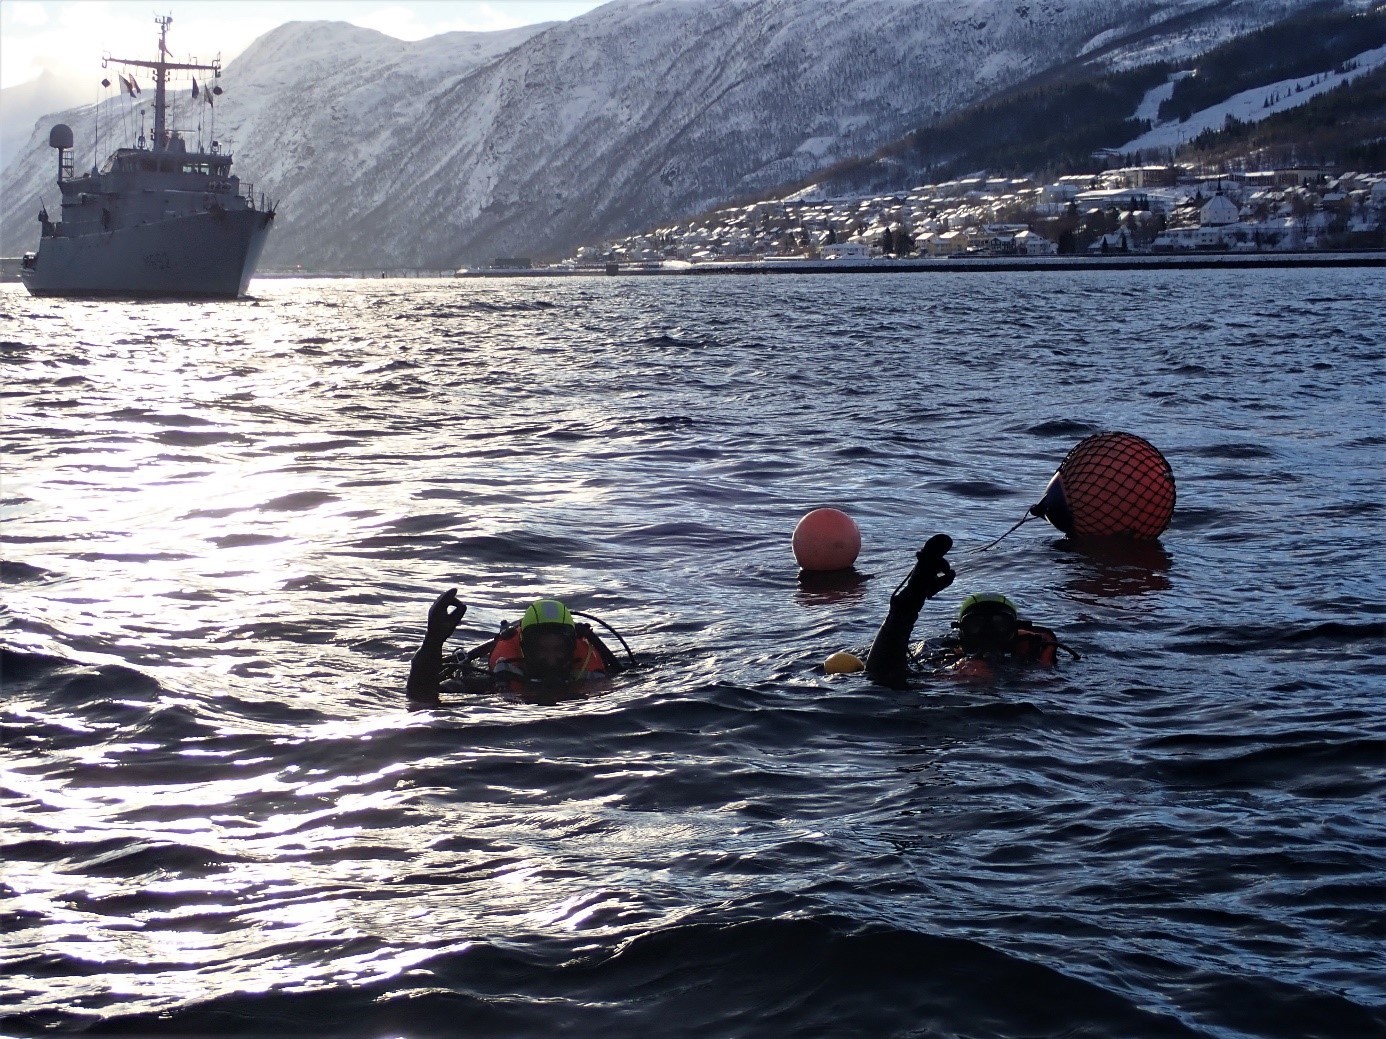  CMT Céphée : participation à l’exercice JOINT WARRIOR 23.1 et navigation en eaux resserrées dans les fjords norvégiens